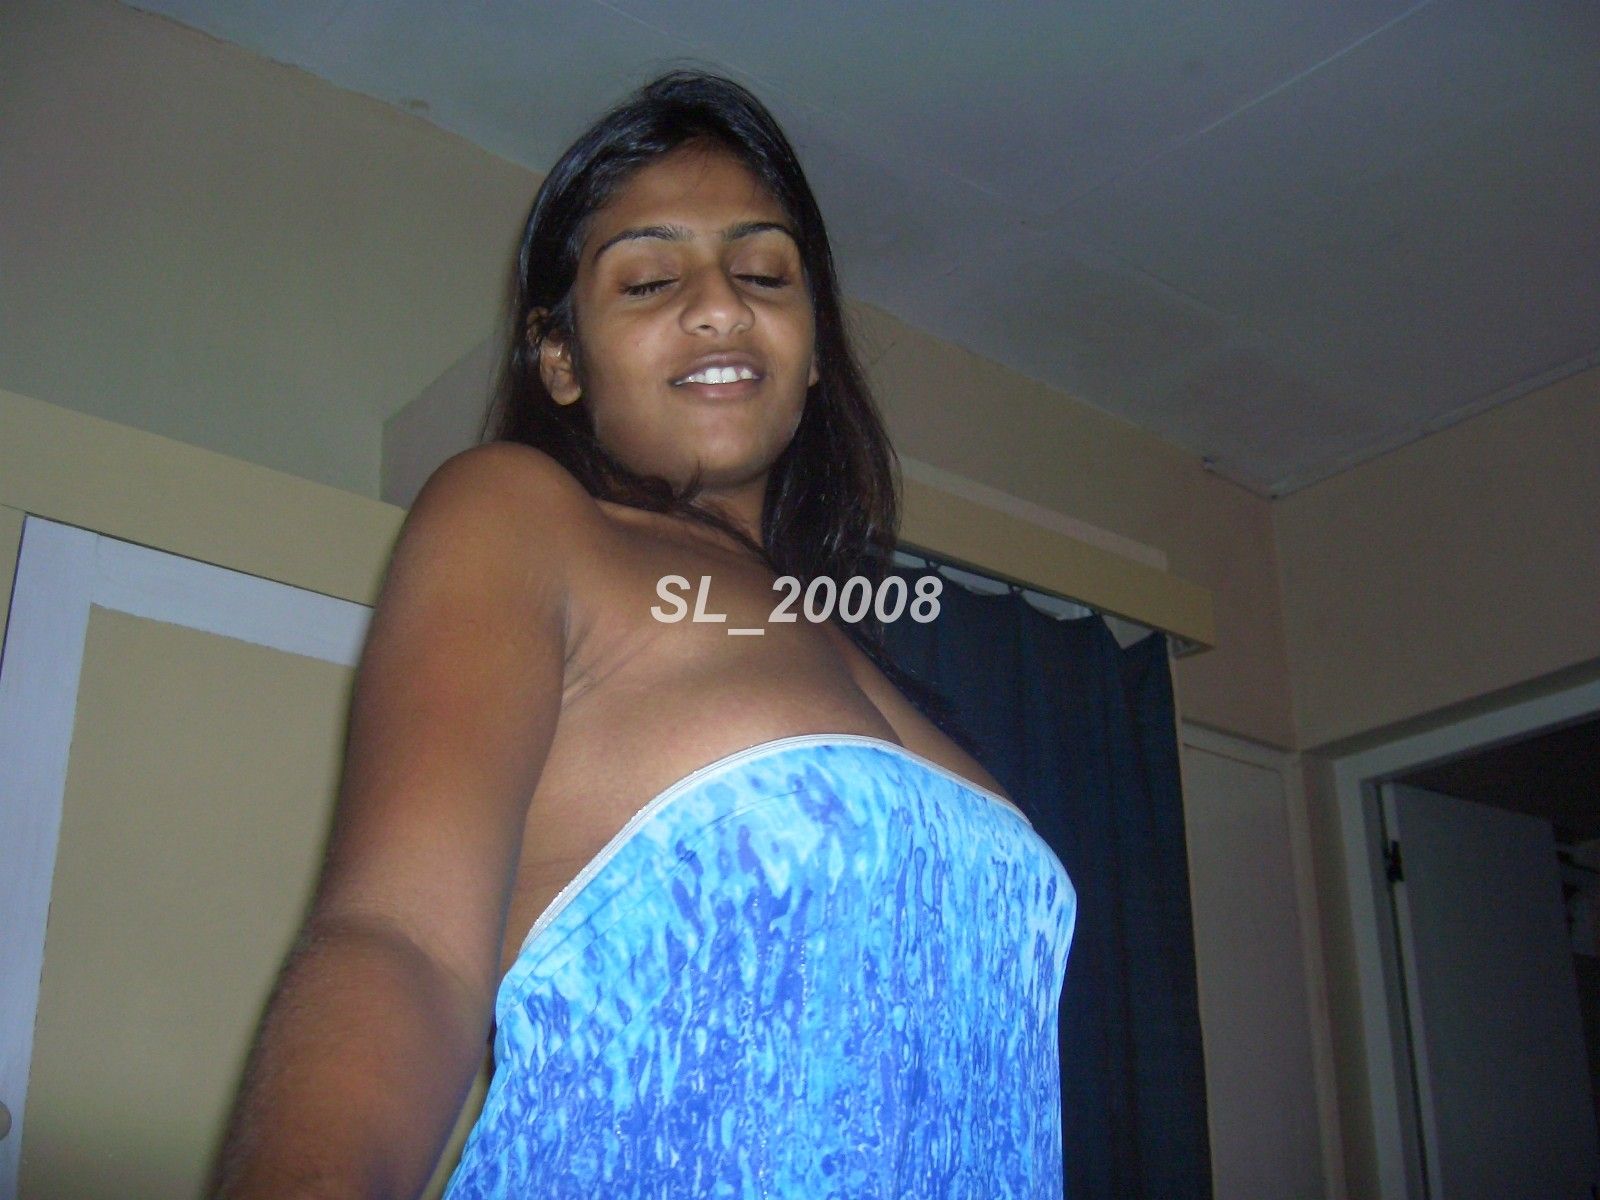 Sl nud girl photos